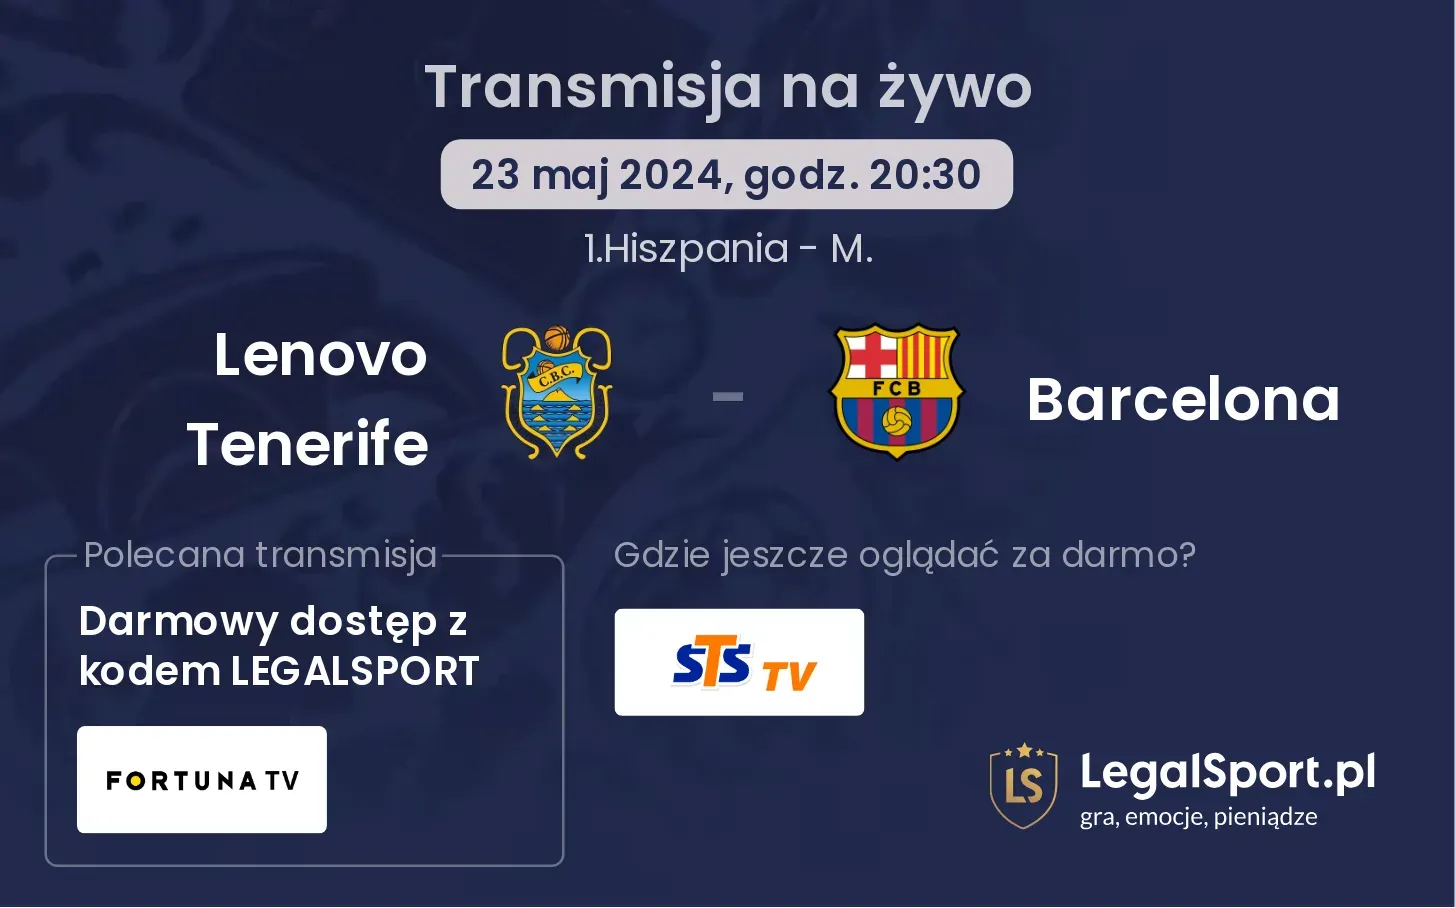 Lenovo Tenerife - Barcelona transmisja na żywo